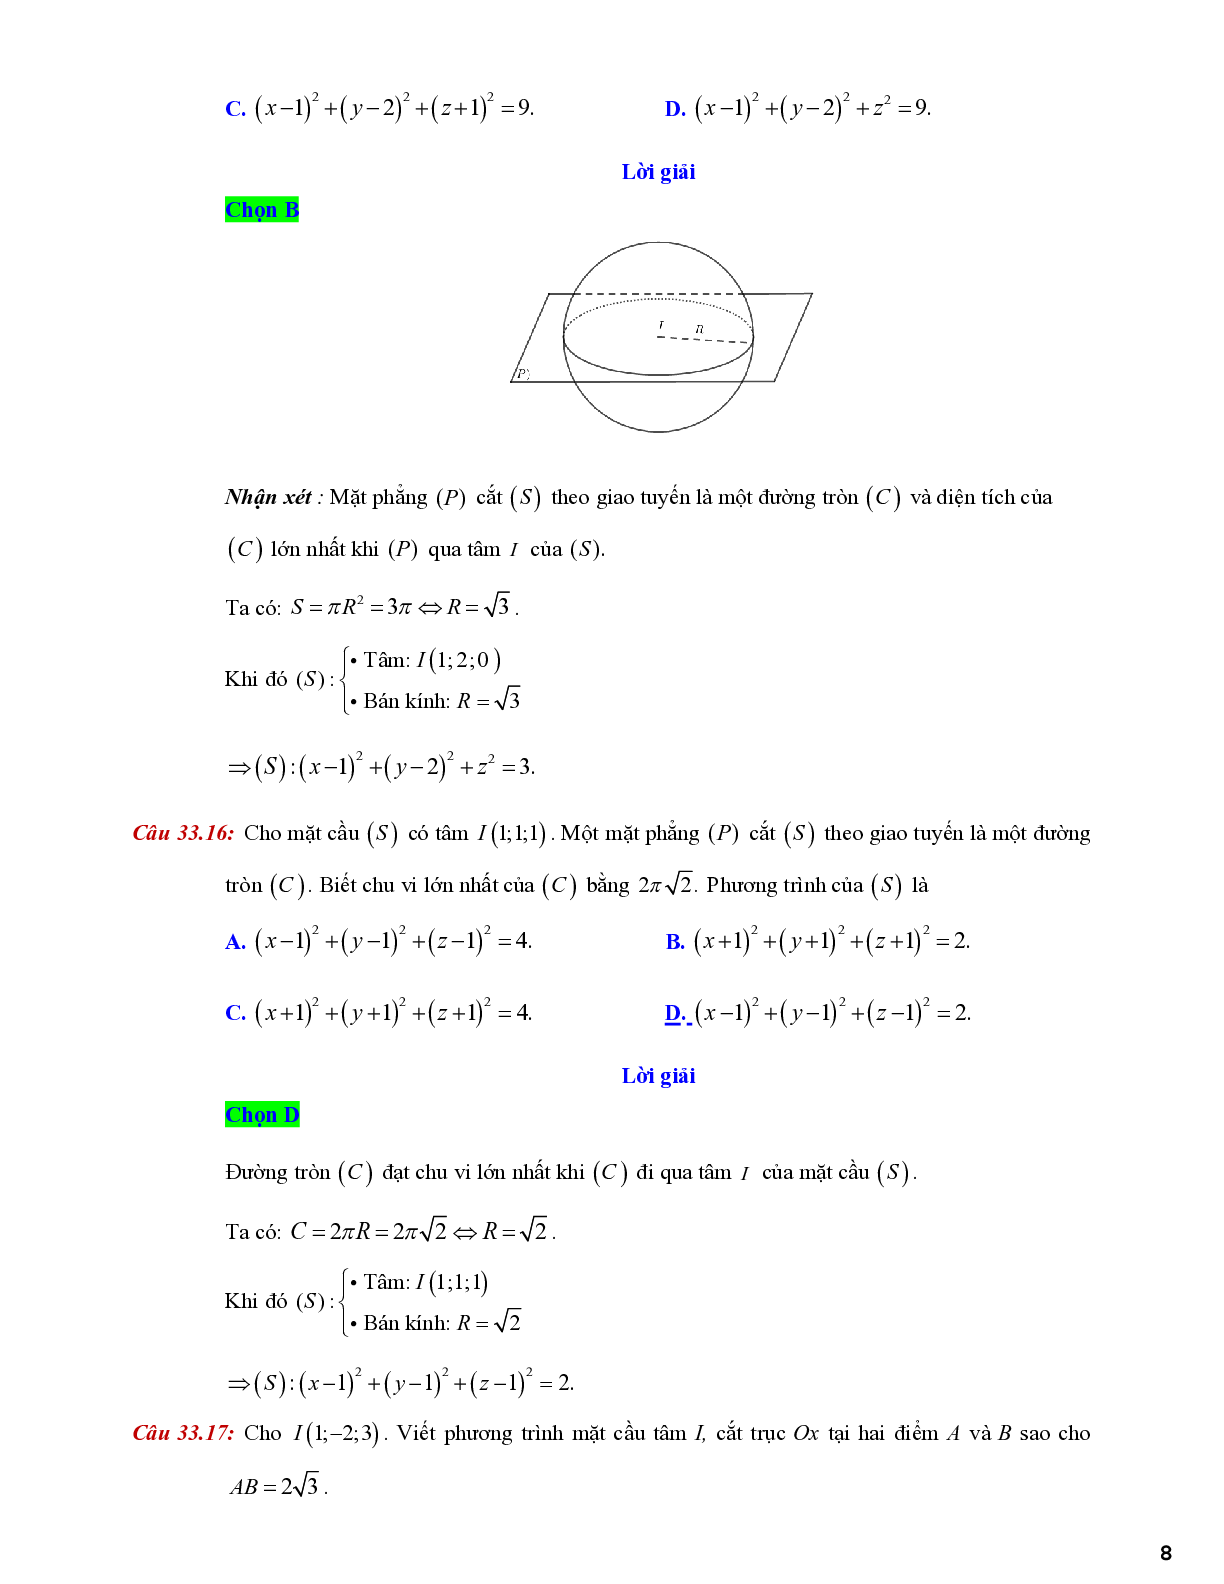 Lý thuyết và bài tập về viết phương trình mặt cầu - có đáp án chi tiết (trang 8)